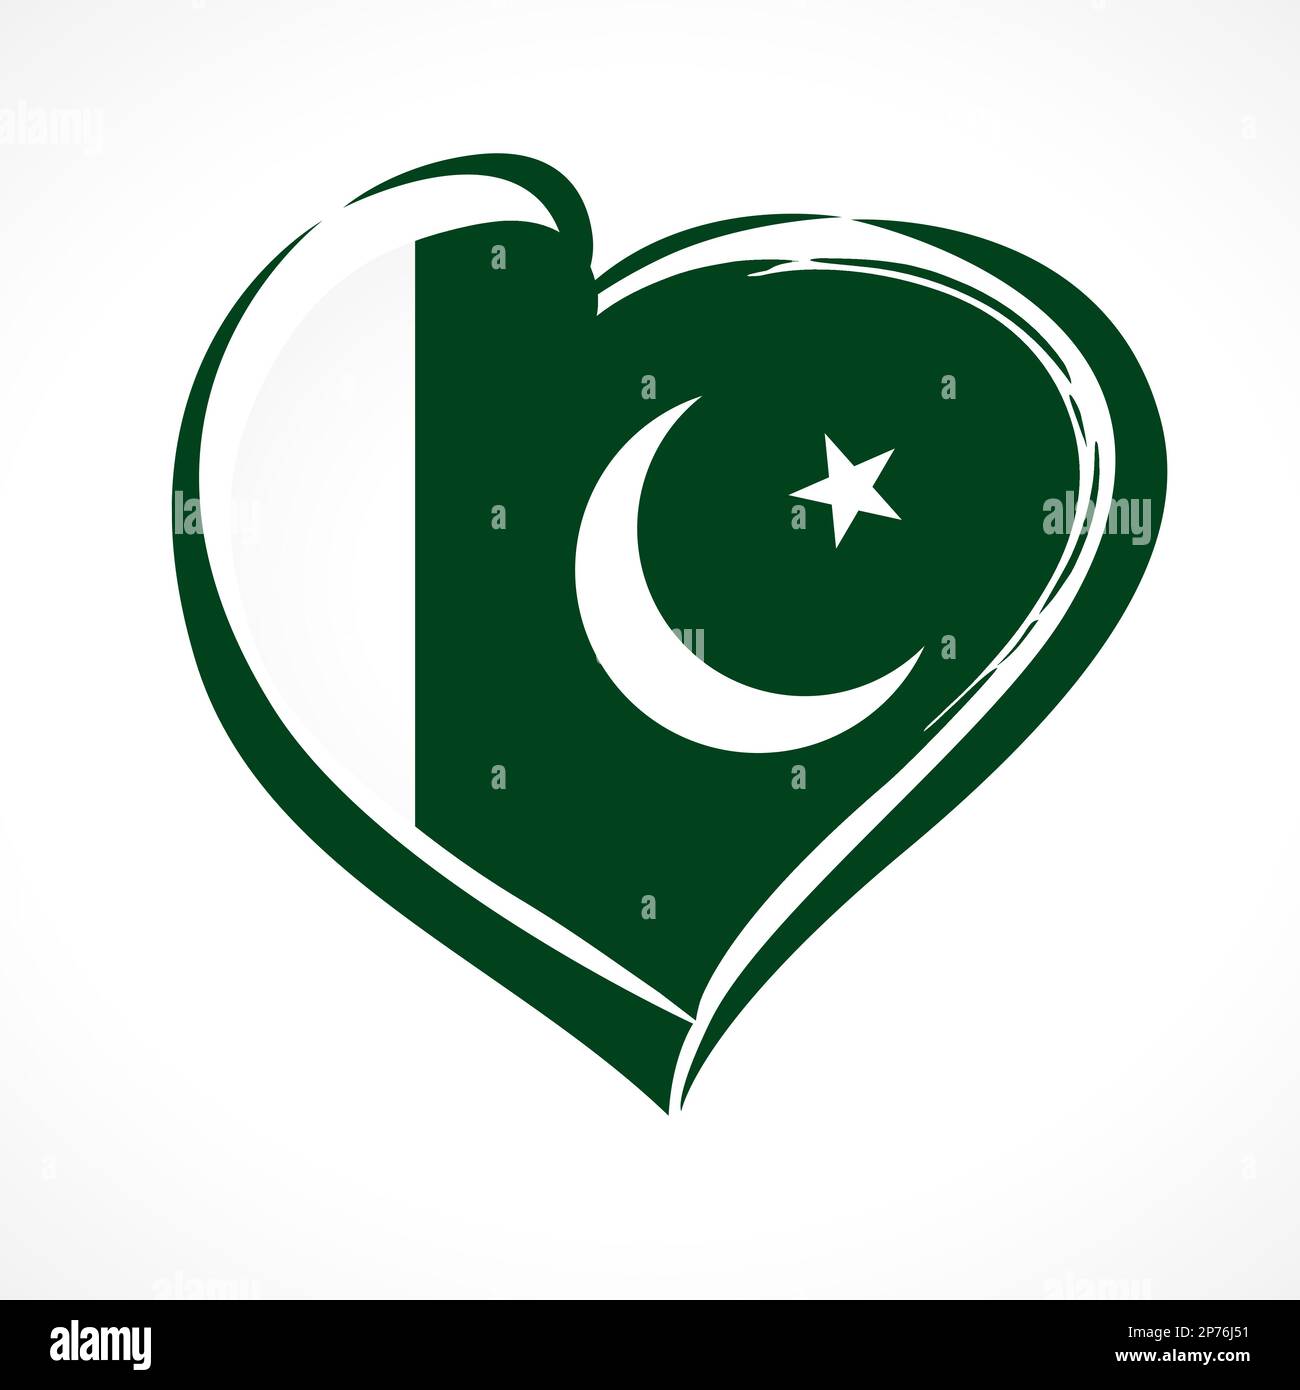 Das Pakistan-Emblem. Konzept für den 23. März, Pakistan Resolution Day - patriotische Landesflagge in Herzform. 14. August 1947, Feiertag des Unabhängigkeitstages Stock Vektor